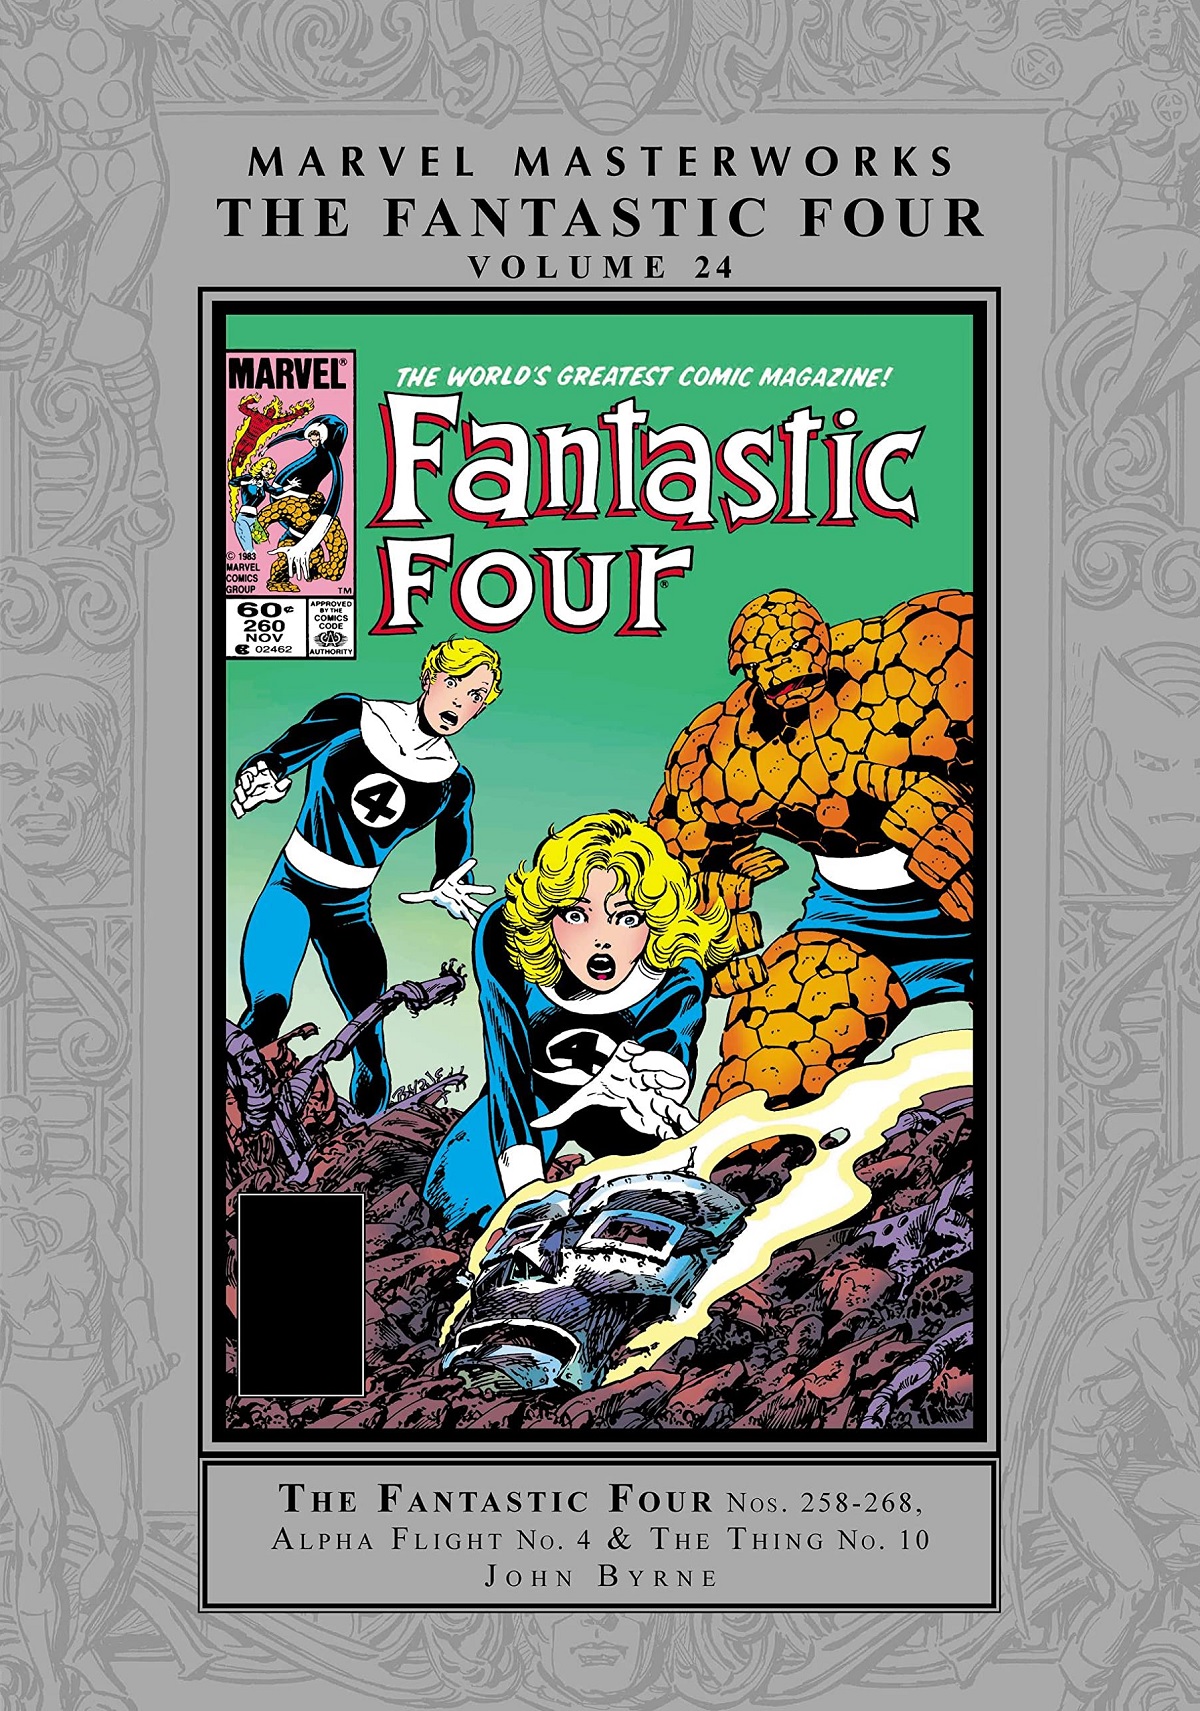 Marvel Masterworks: The Fantastic Four Vol. 24 (Trade Paperback)